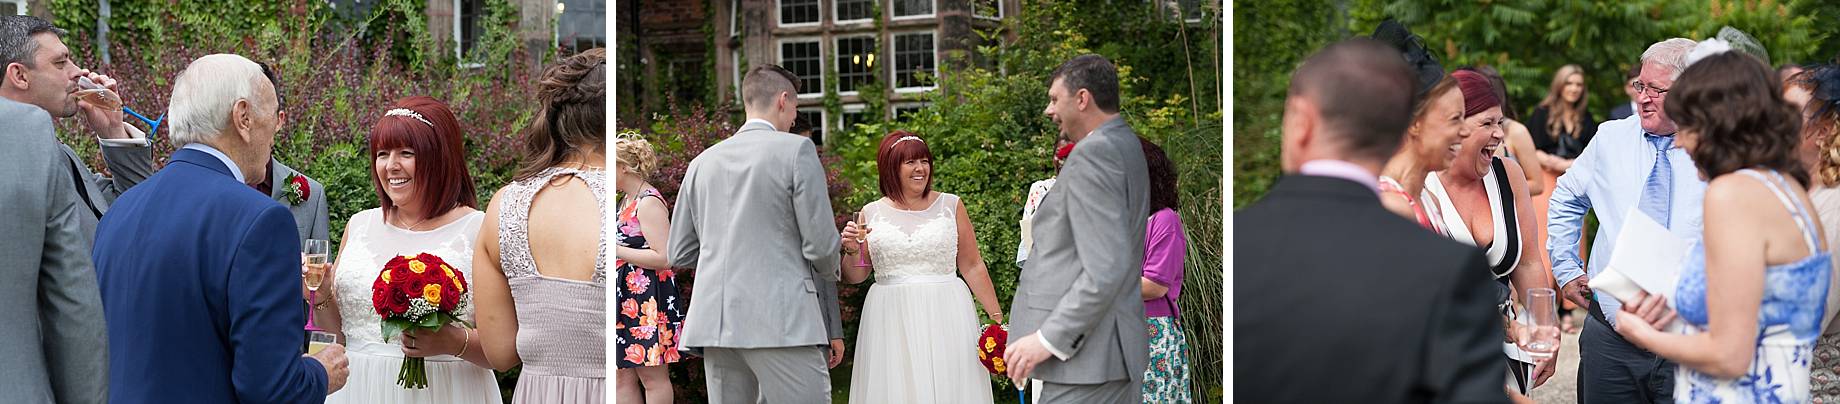 Heskin Hall wedding photography Lancashire